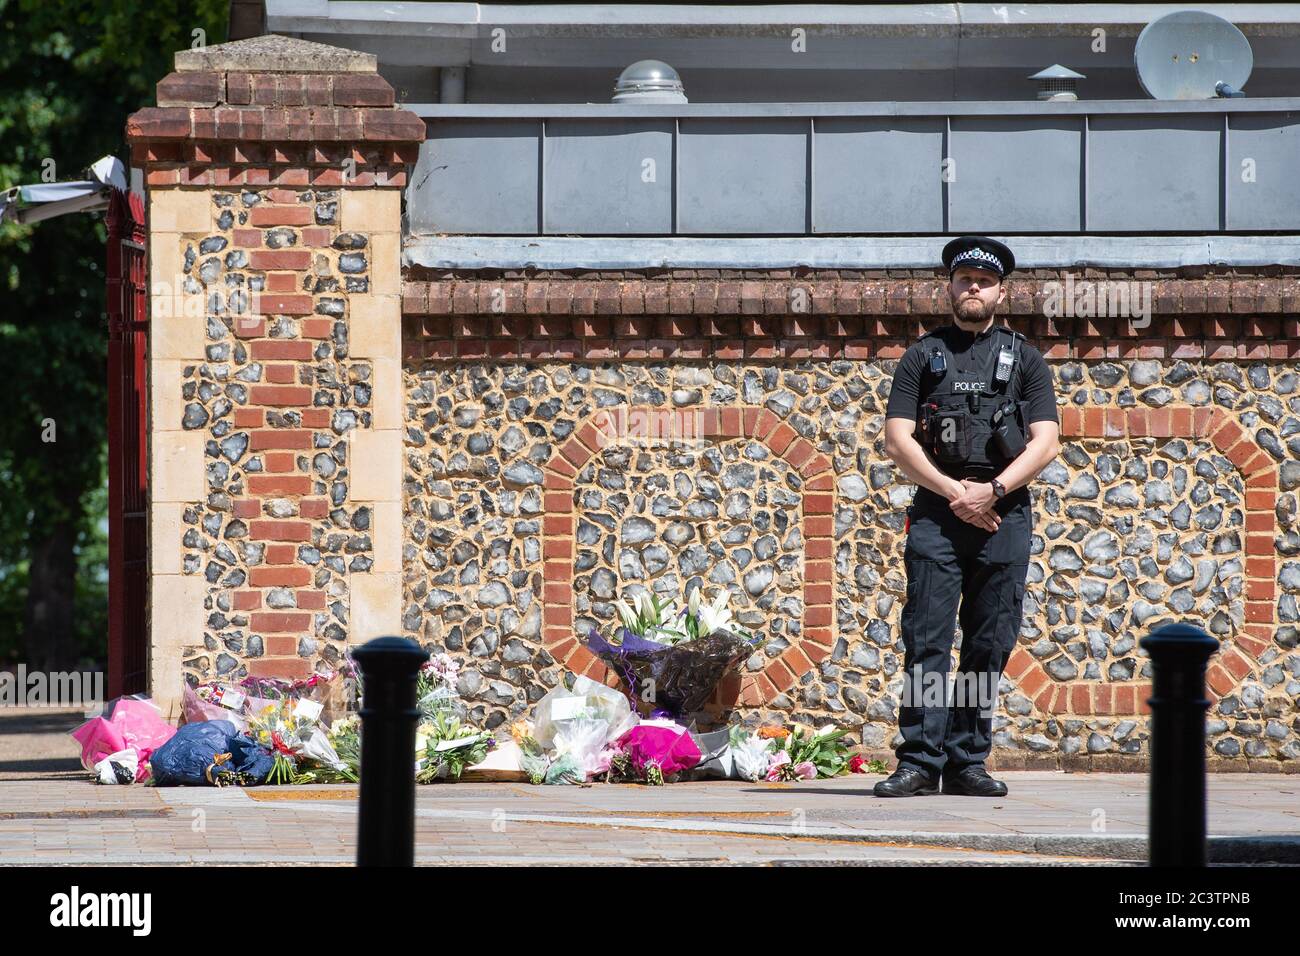 Un policier se tient à côté d'hommages floraux devant les jardins de Forbury, dans le centre-ville de Reading, le théâtre d'une attaque multiple qui a eu lieu vers 19:00 samedi, laissant trois morts et trois autres blessés graves. Banque D'Images